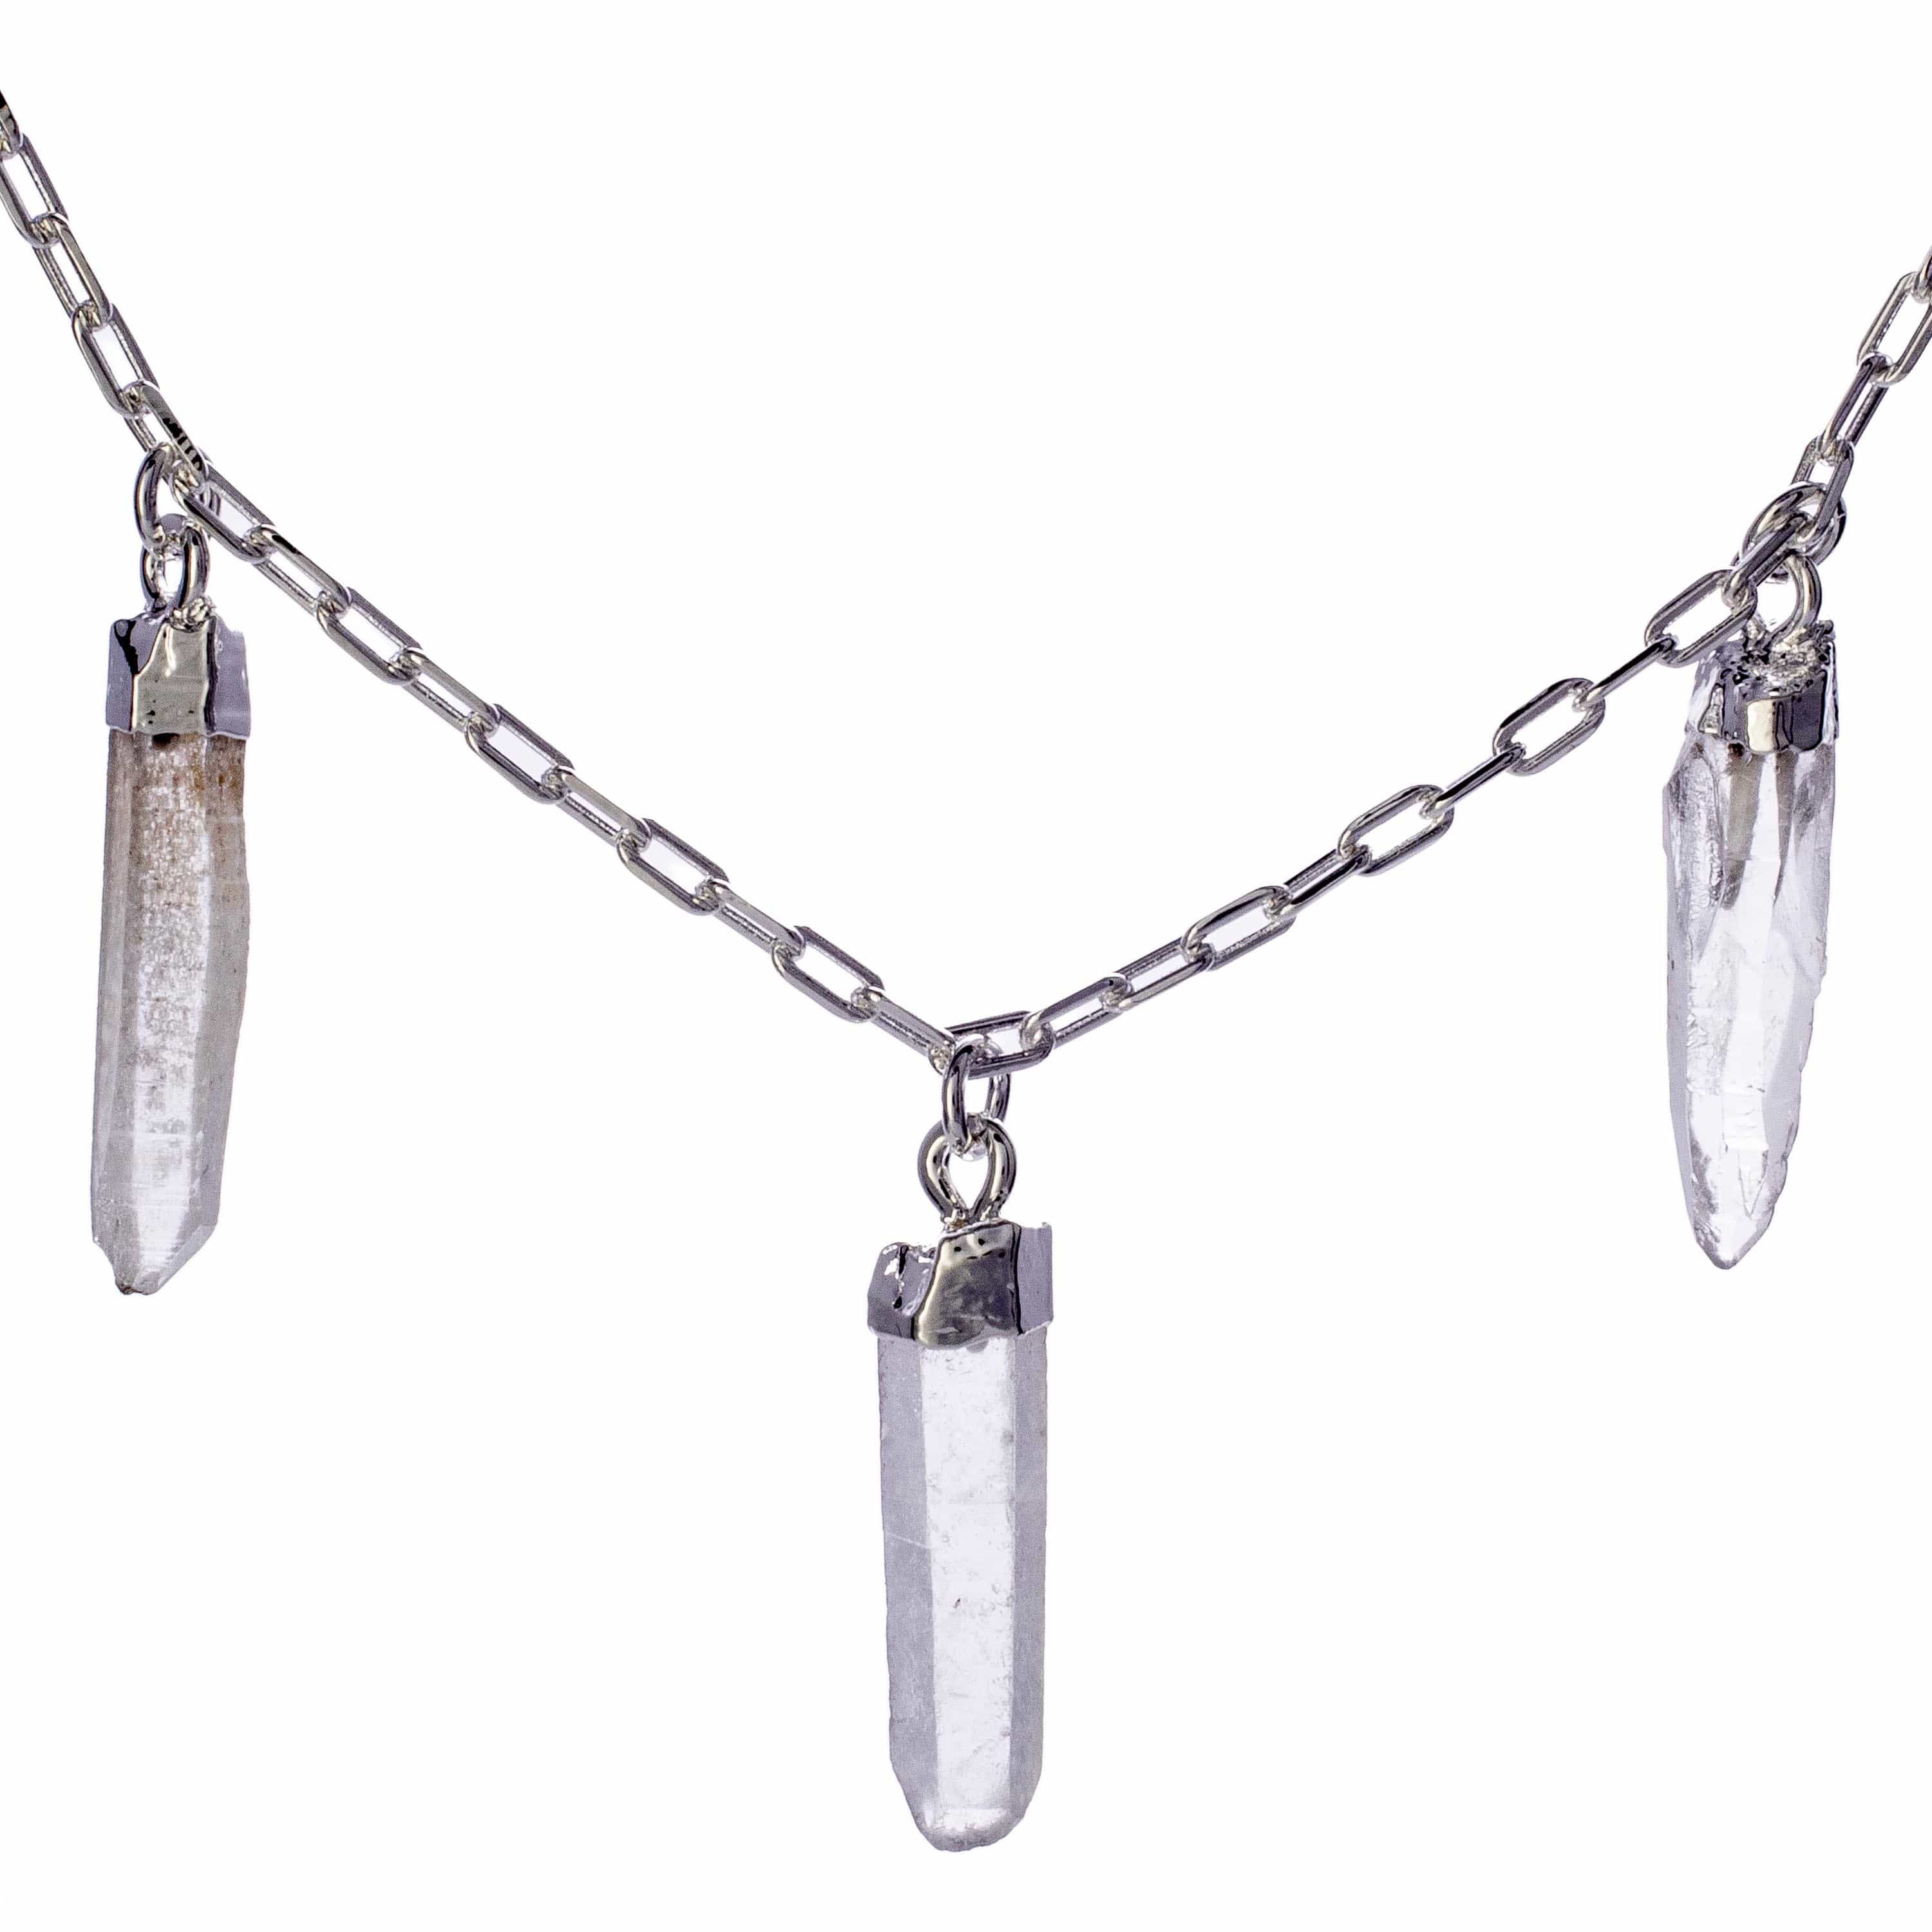 Kalifano Crystal Jewelry Clear Quartz Triple Point Necklace CJN-2042-QZ